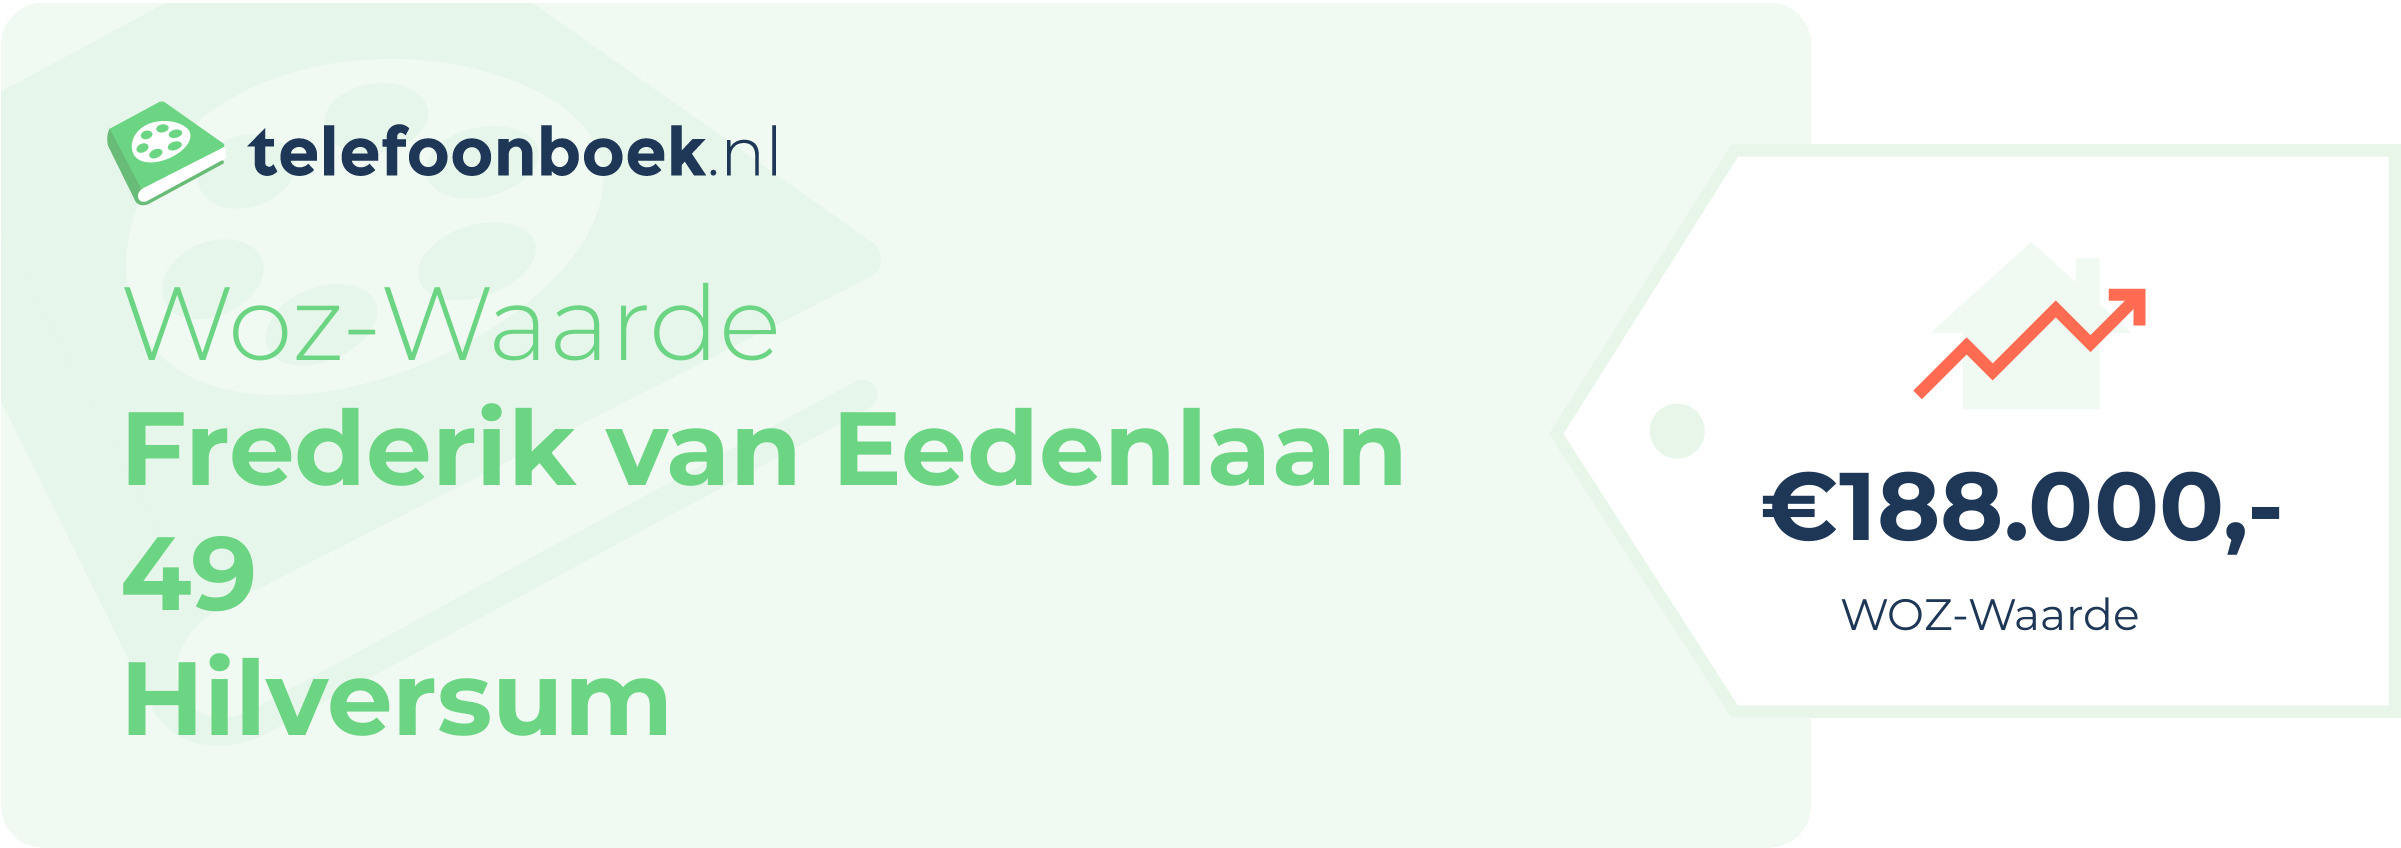 WOZ-waarde Frederik Van Eedenlaan 49 Hilversum